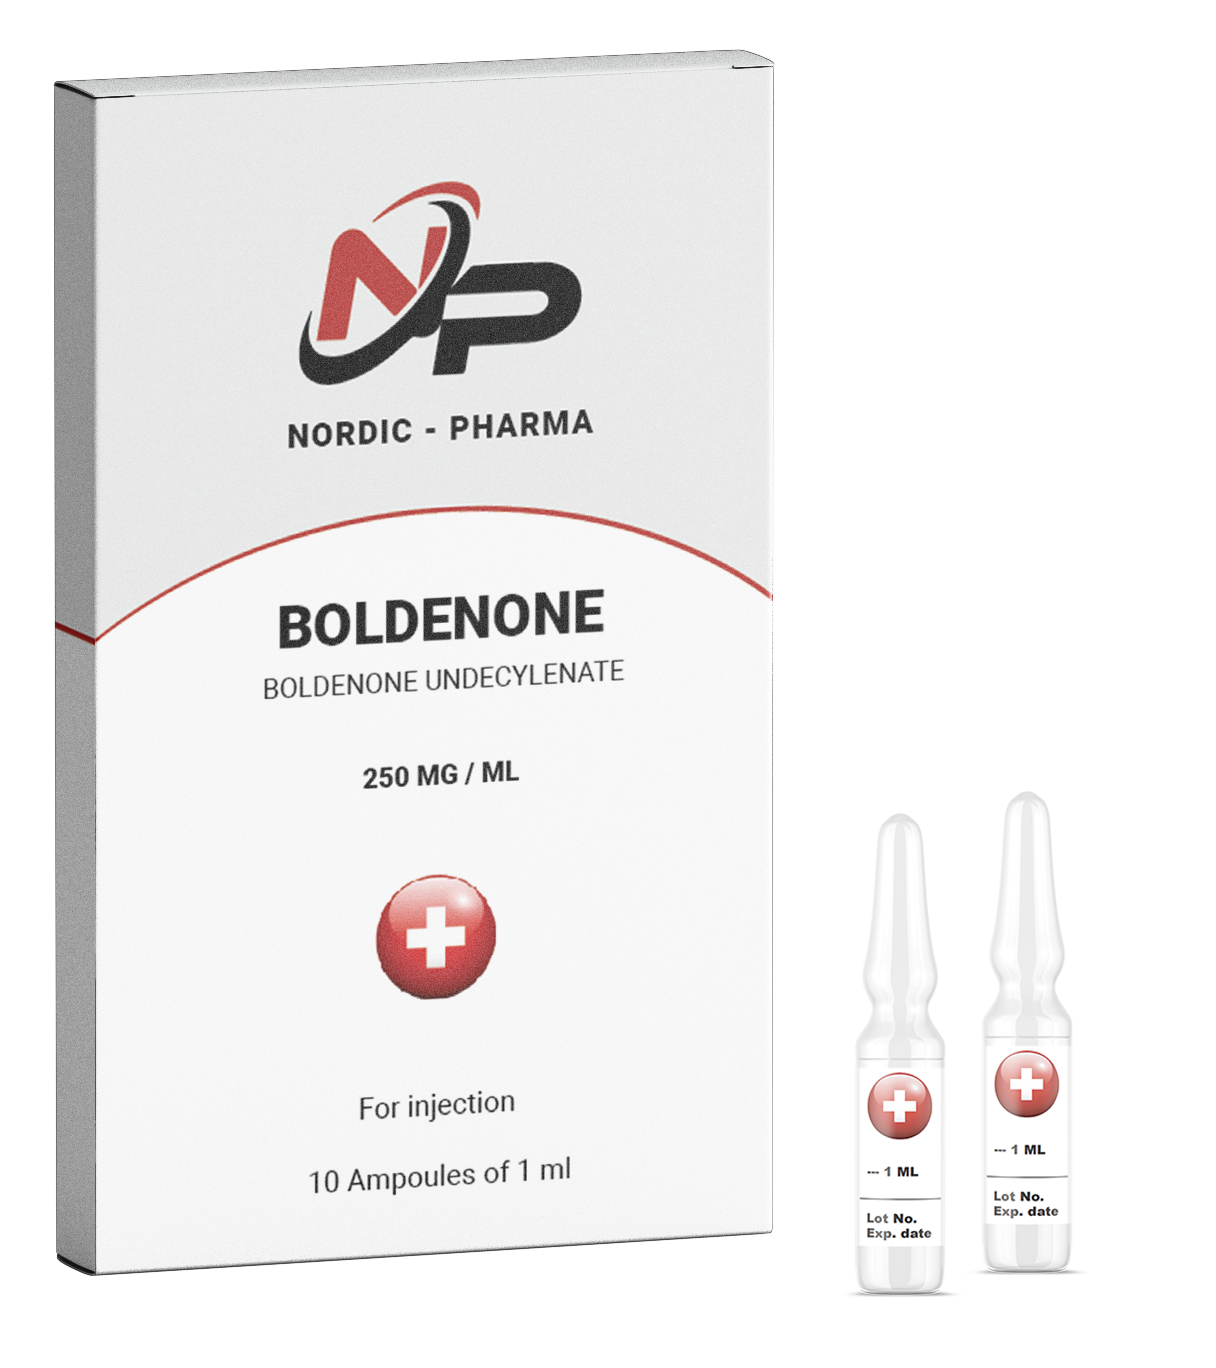 boldenone